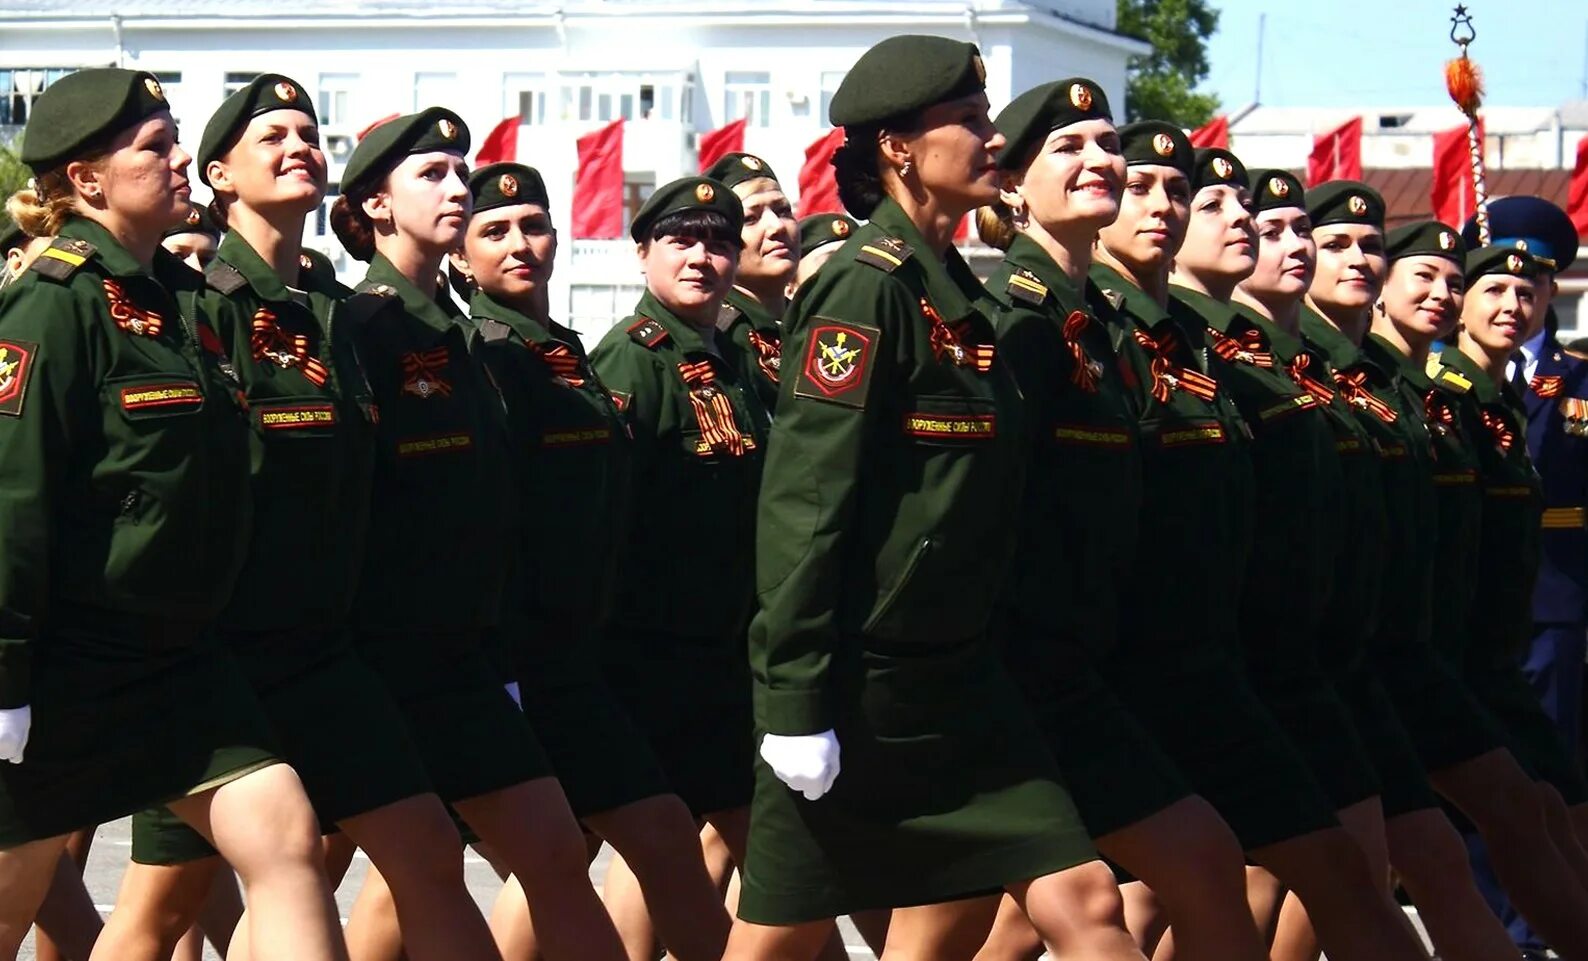 Женщины военнослужащие. Женщины в Российской армии. Русские женщины военнослужащие. Женщина военнослужащая Российской армии. Армейская 23